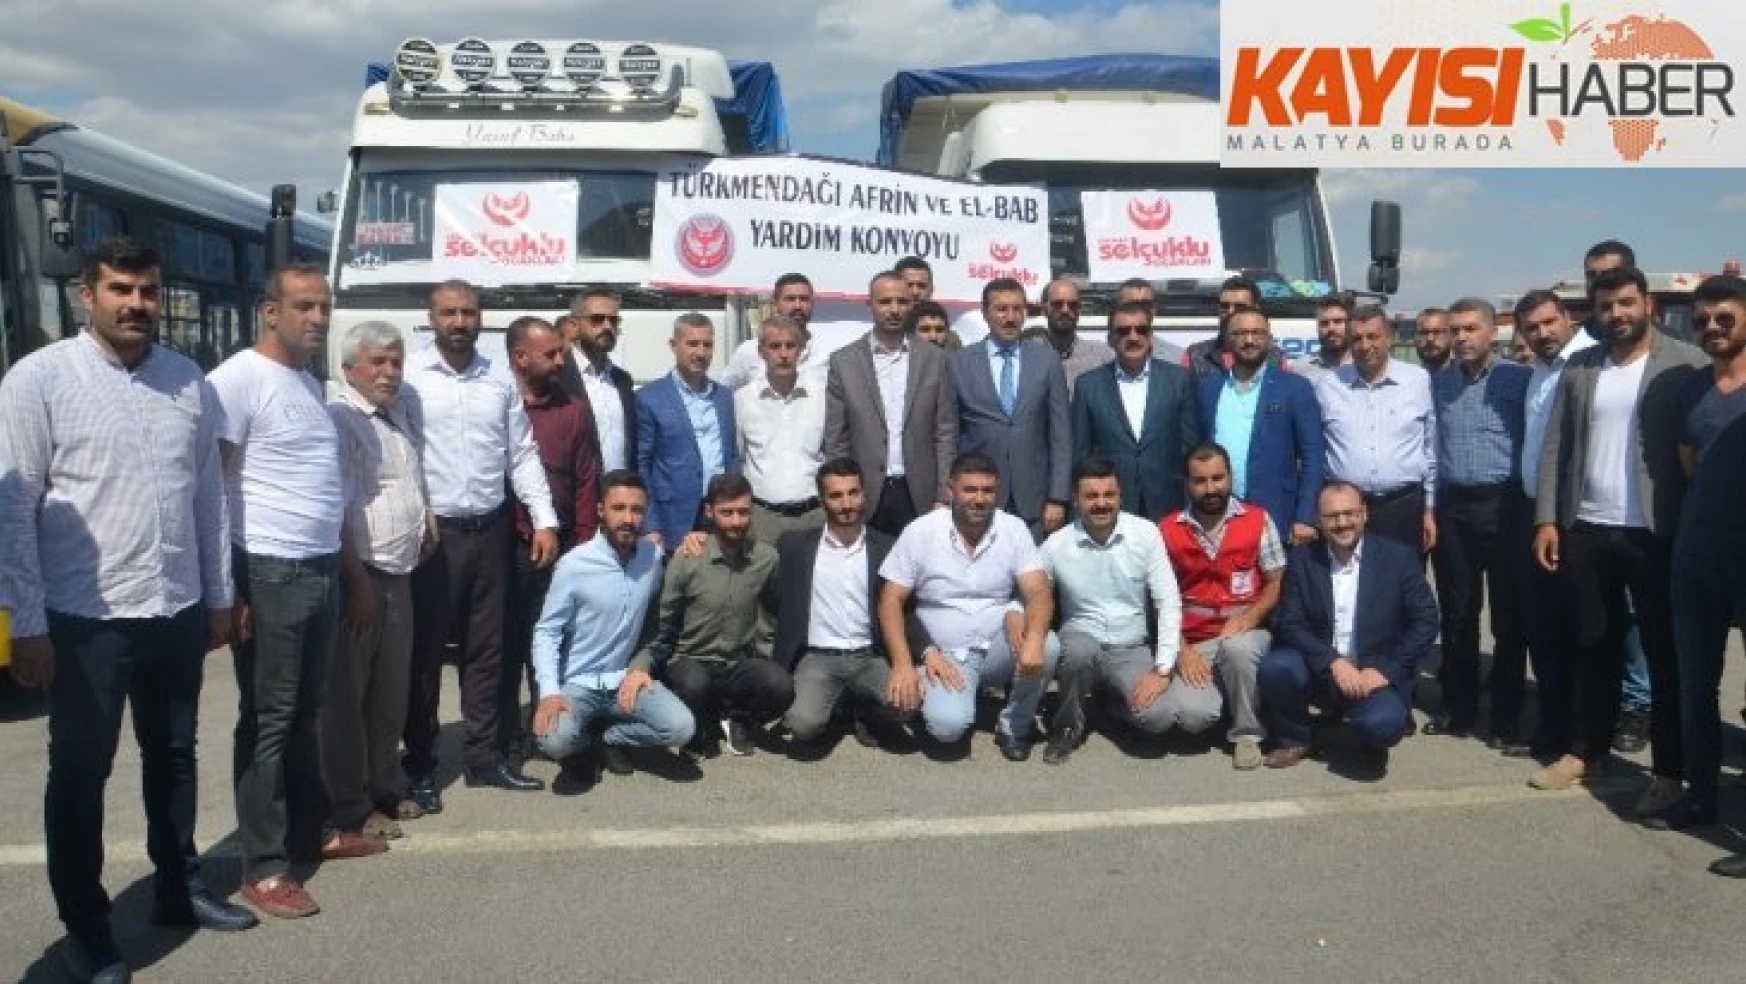 Malatya'dan Türkmenlere yardım eli